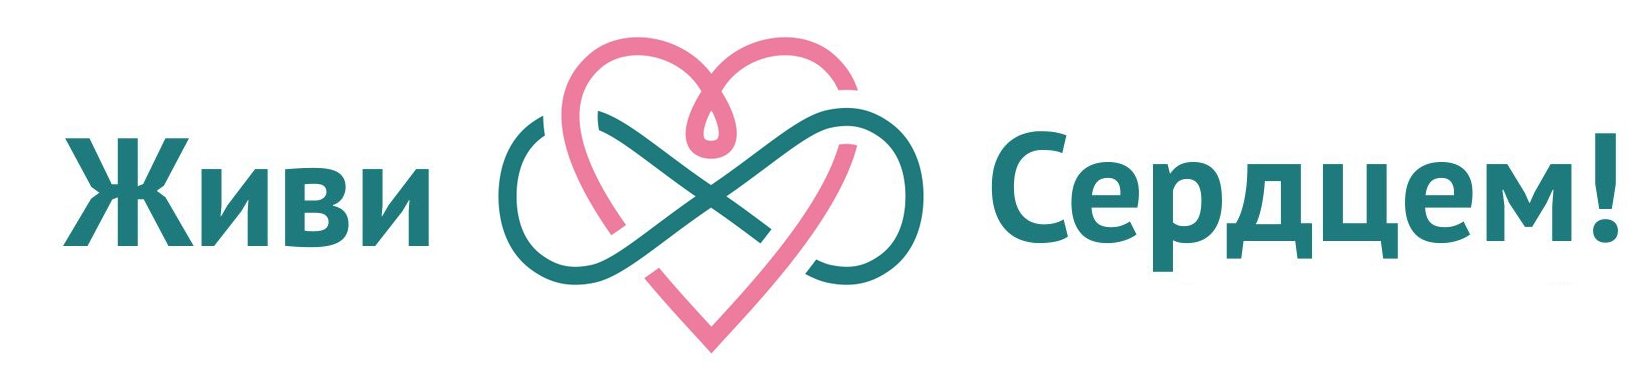 Сайт фонда живой. Клиника + сердце логотип Москва. Купуева лого. Eva logo.